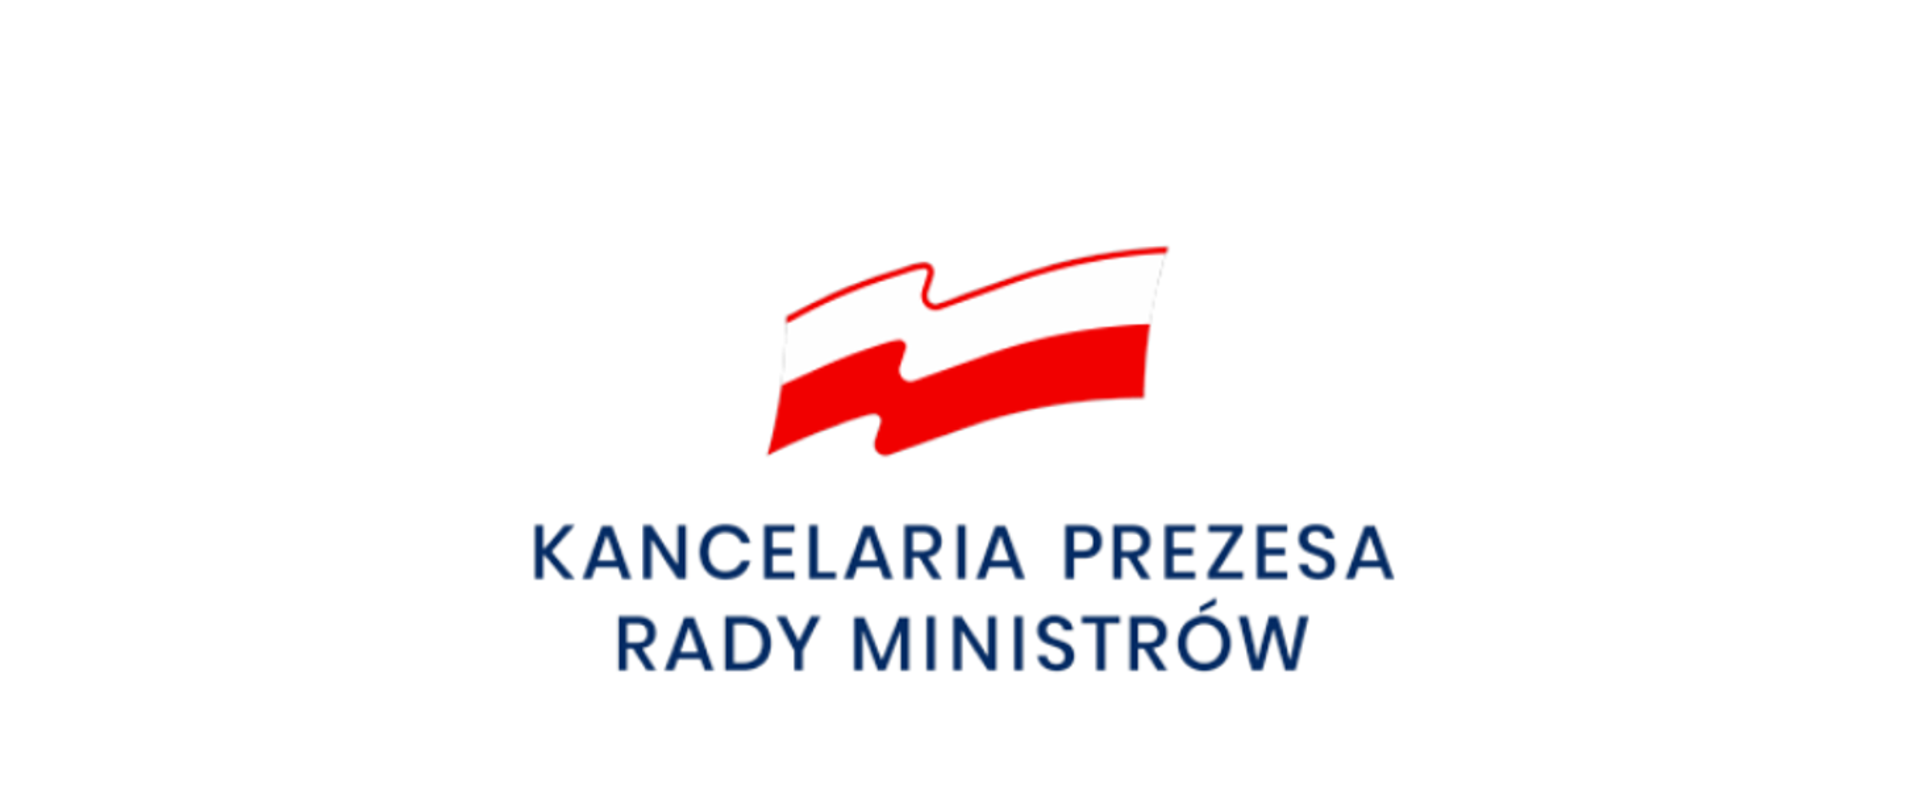 "Flaga Polski, pod flagą napis Kancelaria Prezesa Rady Ministrów na białym tle."